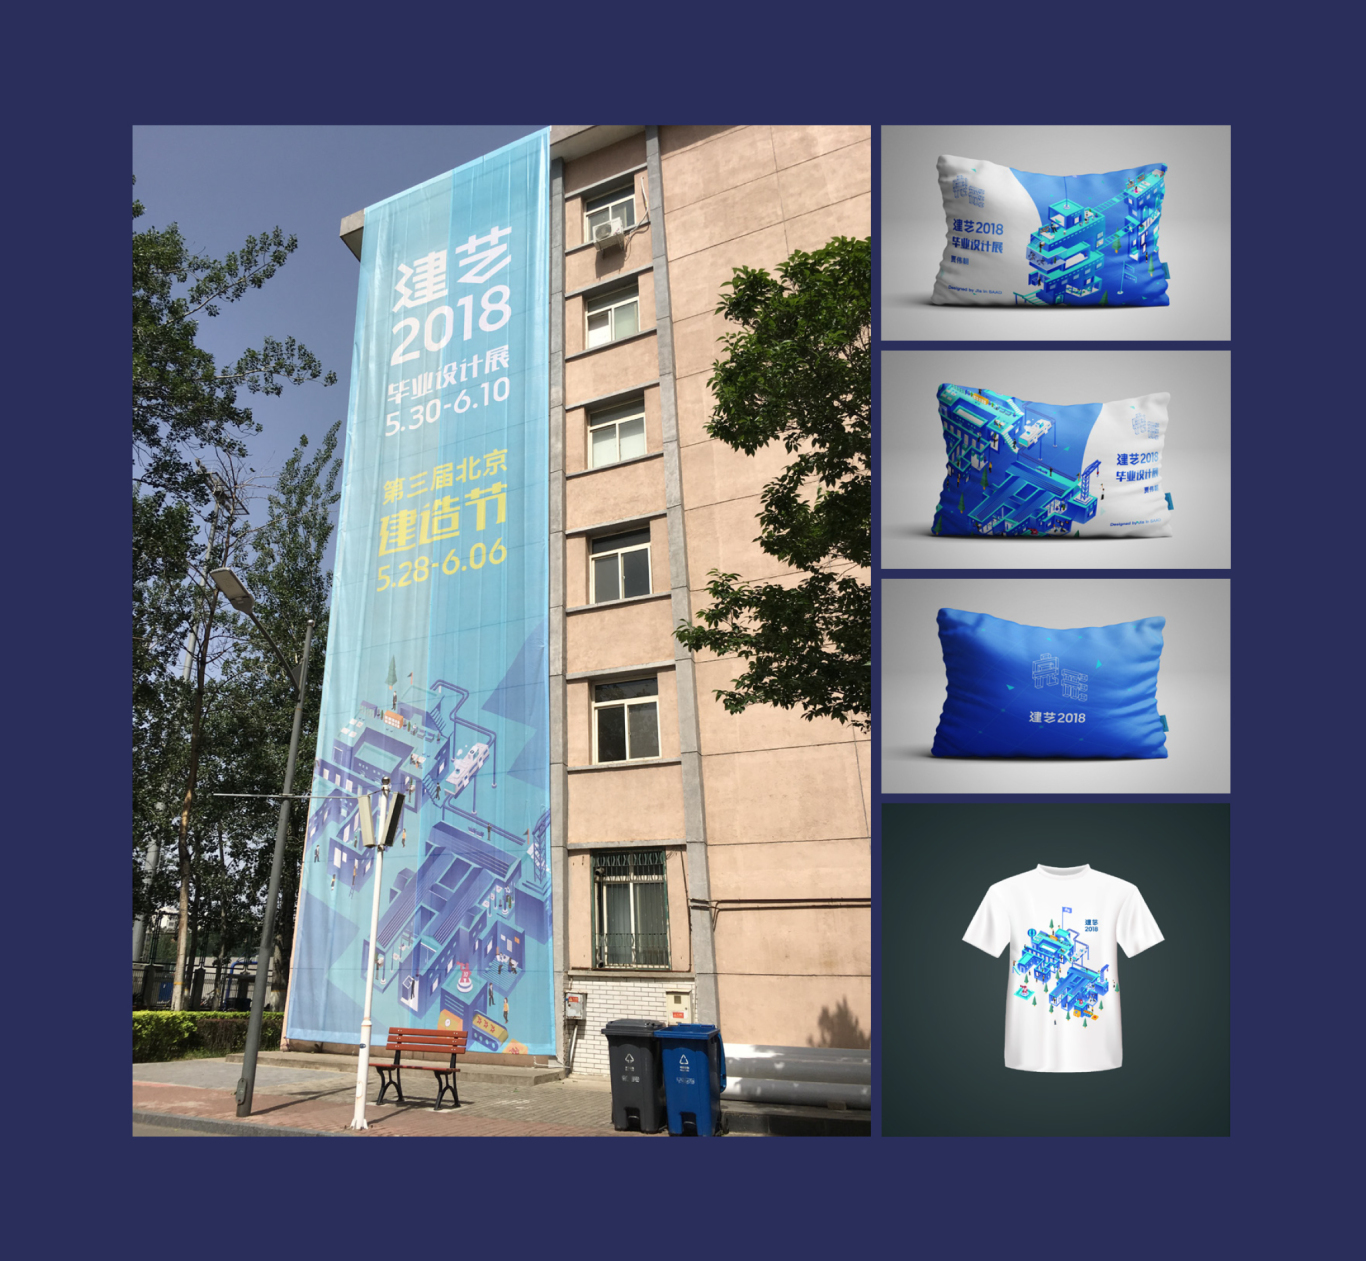 北京交通大学建筑与艺术学院毕业设计展览形象设计图9